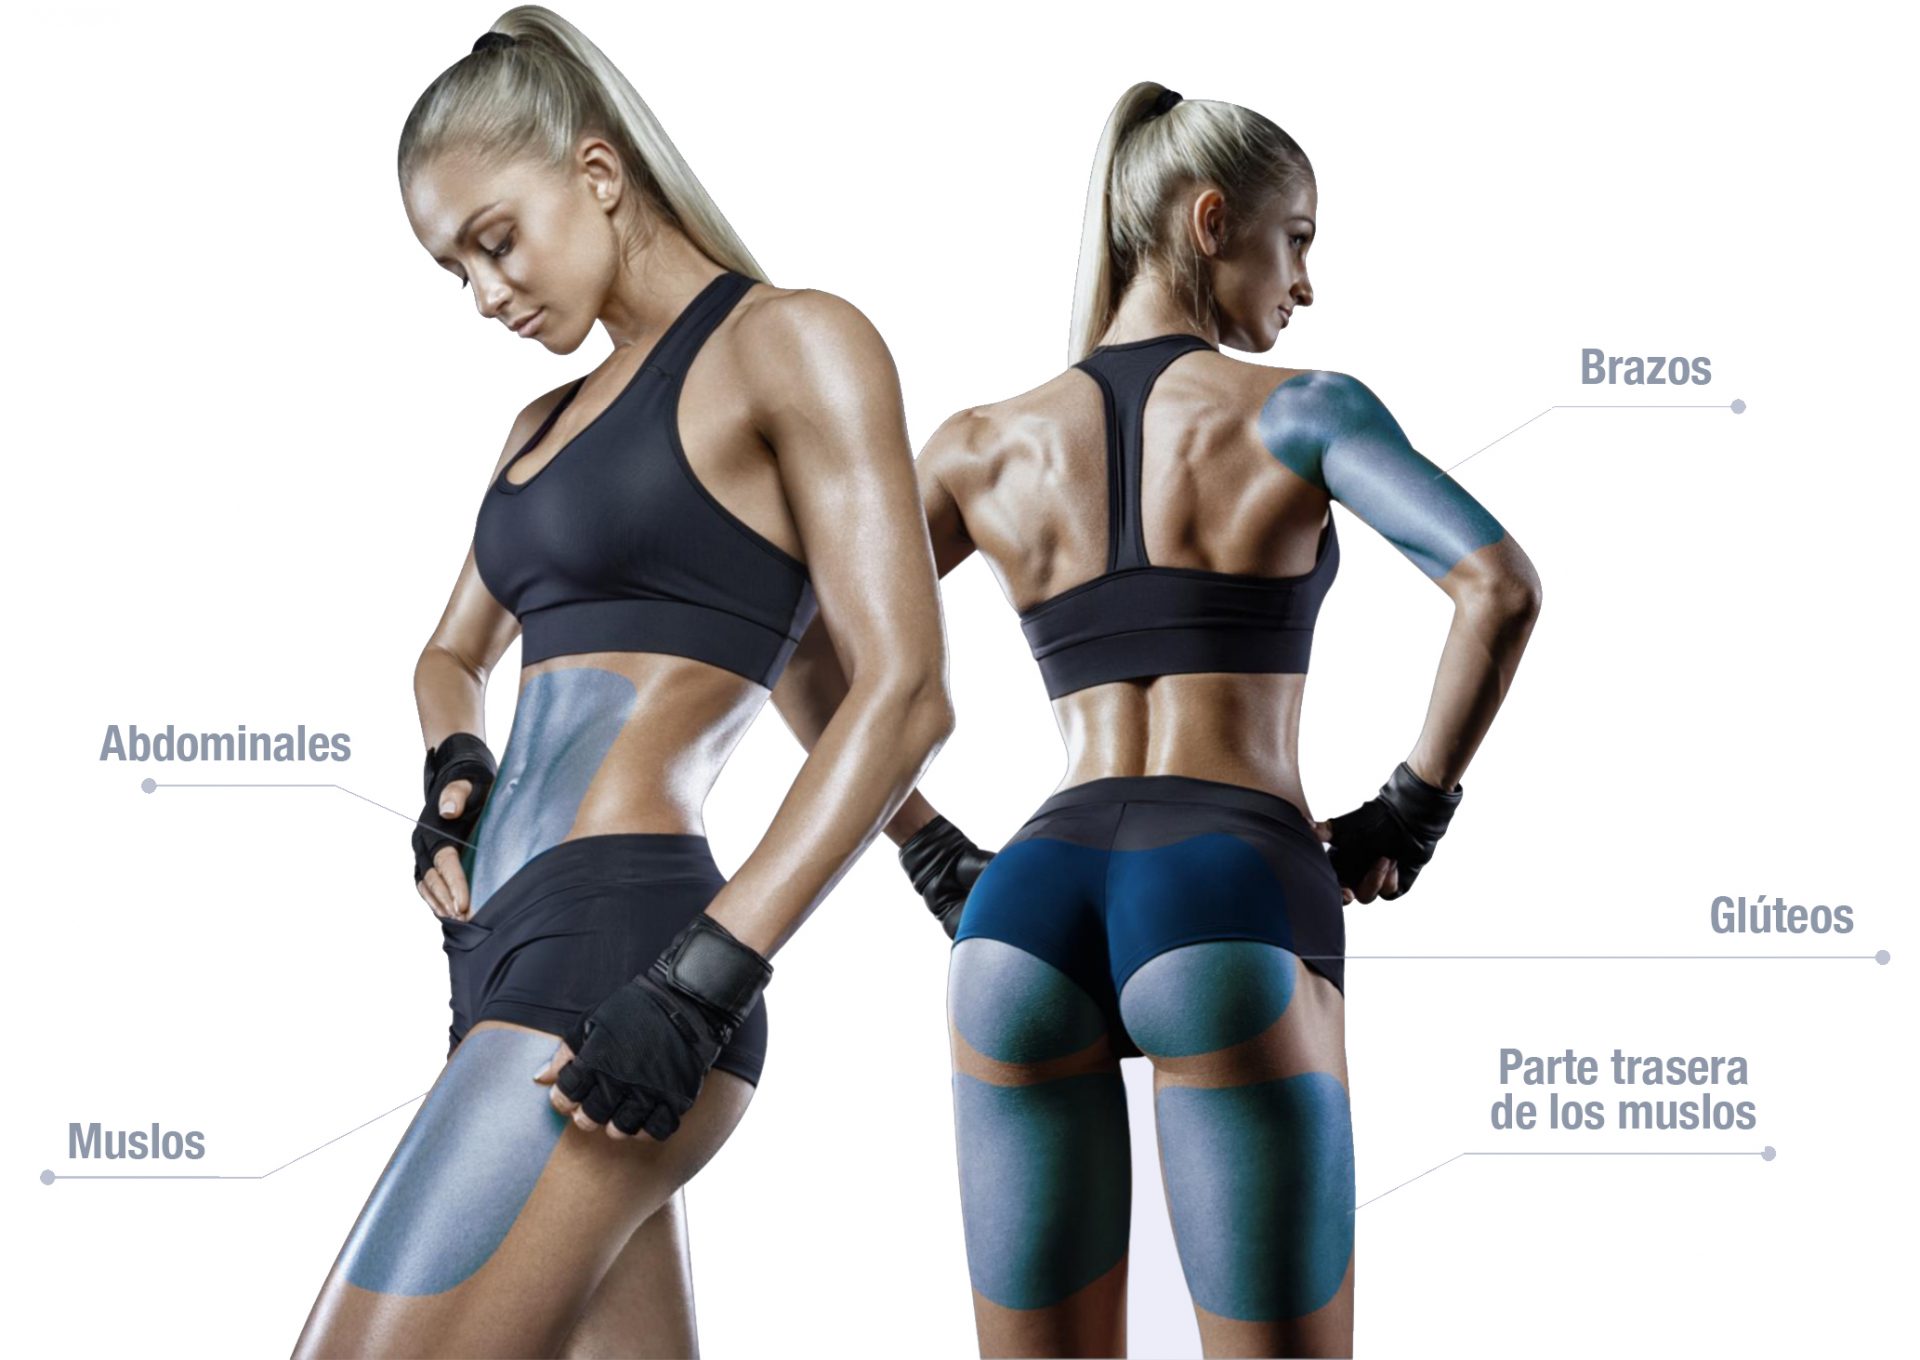 INSHAPE DEFINEX nueva generación de dispositivos para modelar el cuerpo. tecnología inteligente de entrenamiento muscular automático